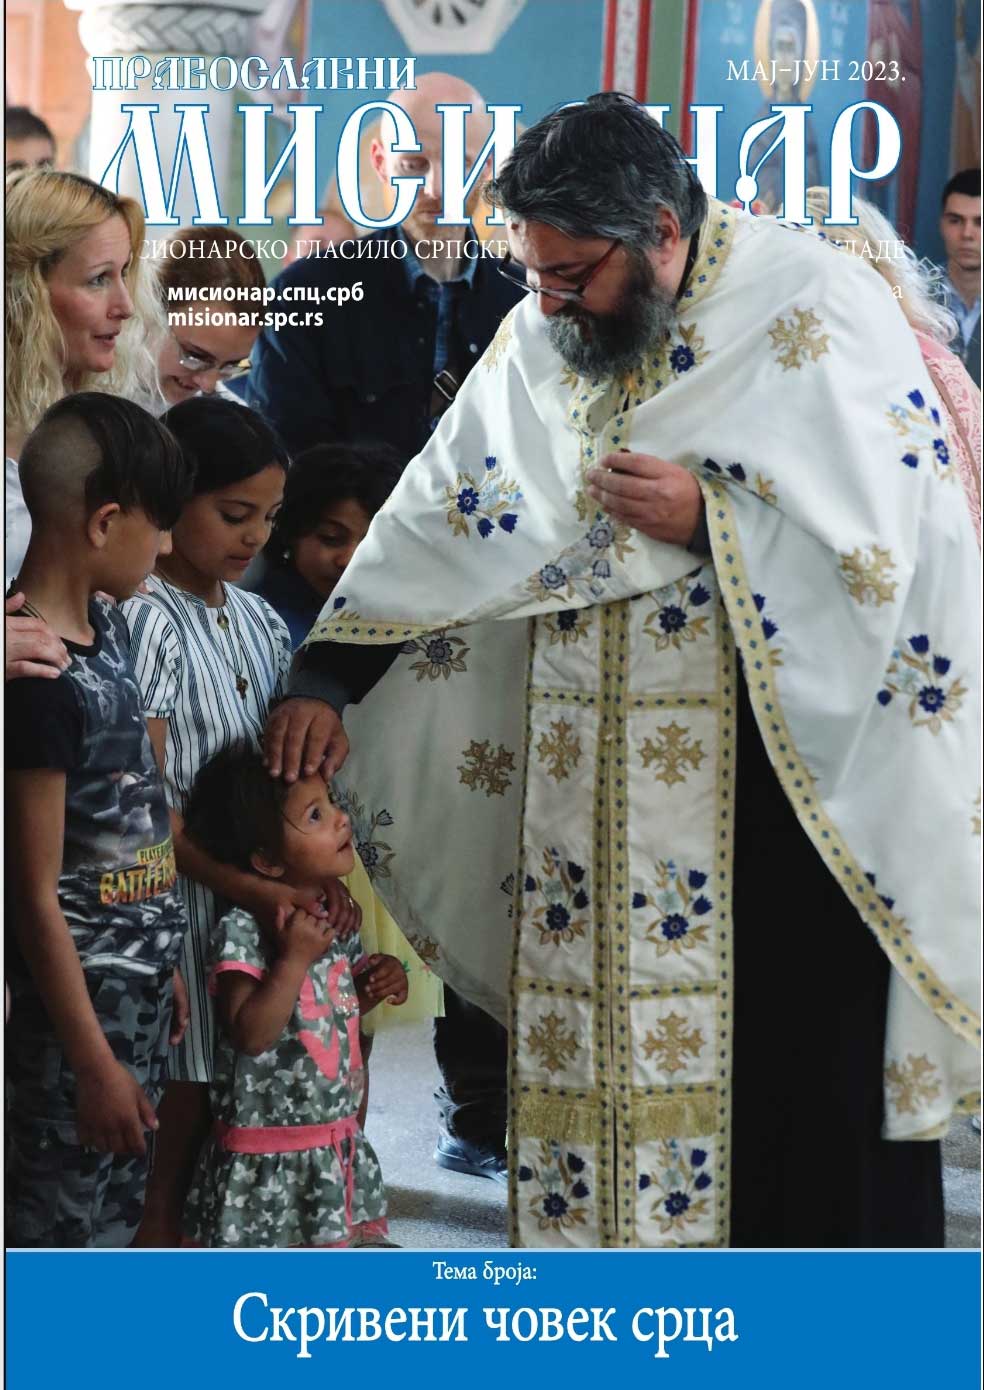 Скривени човек срца: Приказ 391. броја „Православног мисионара“